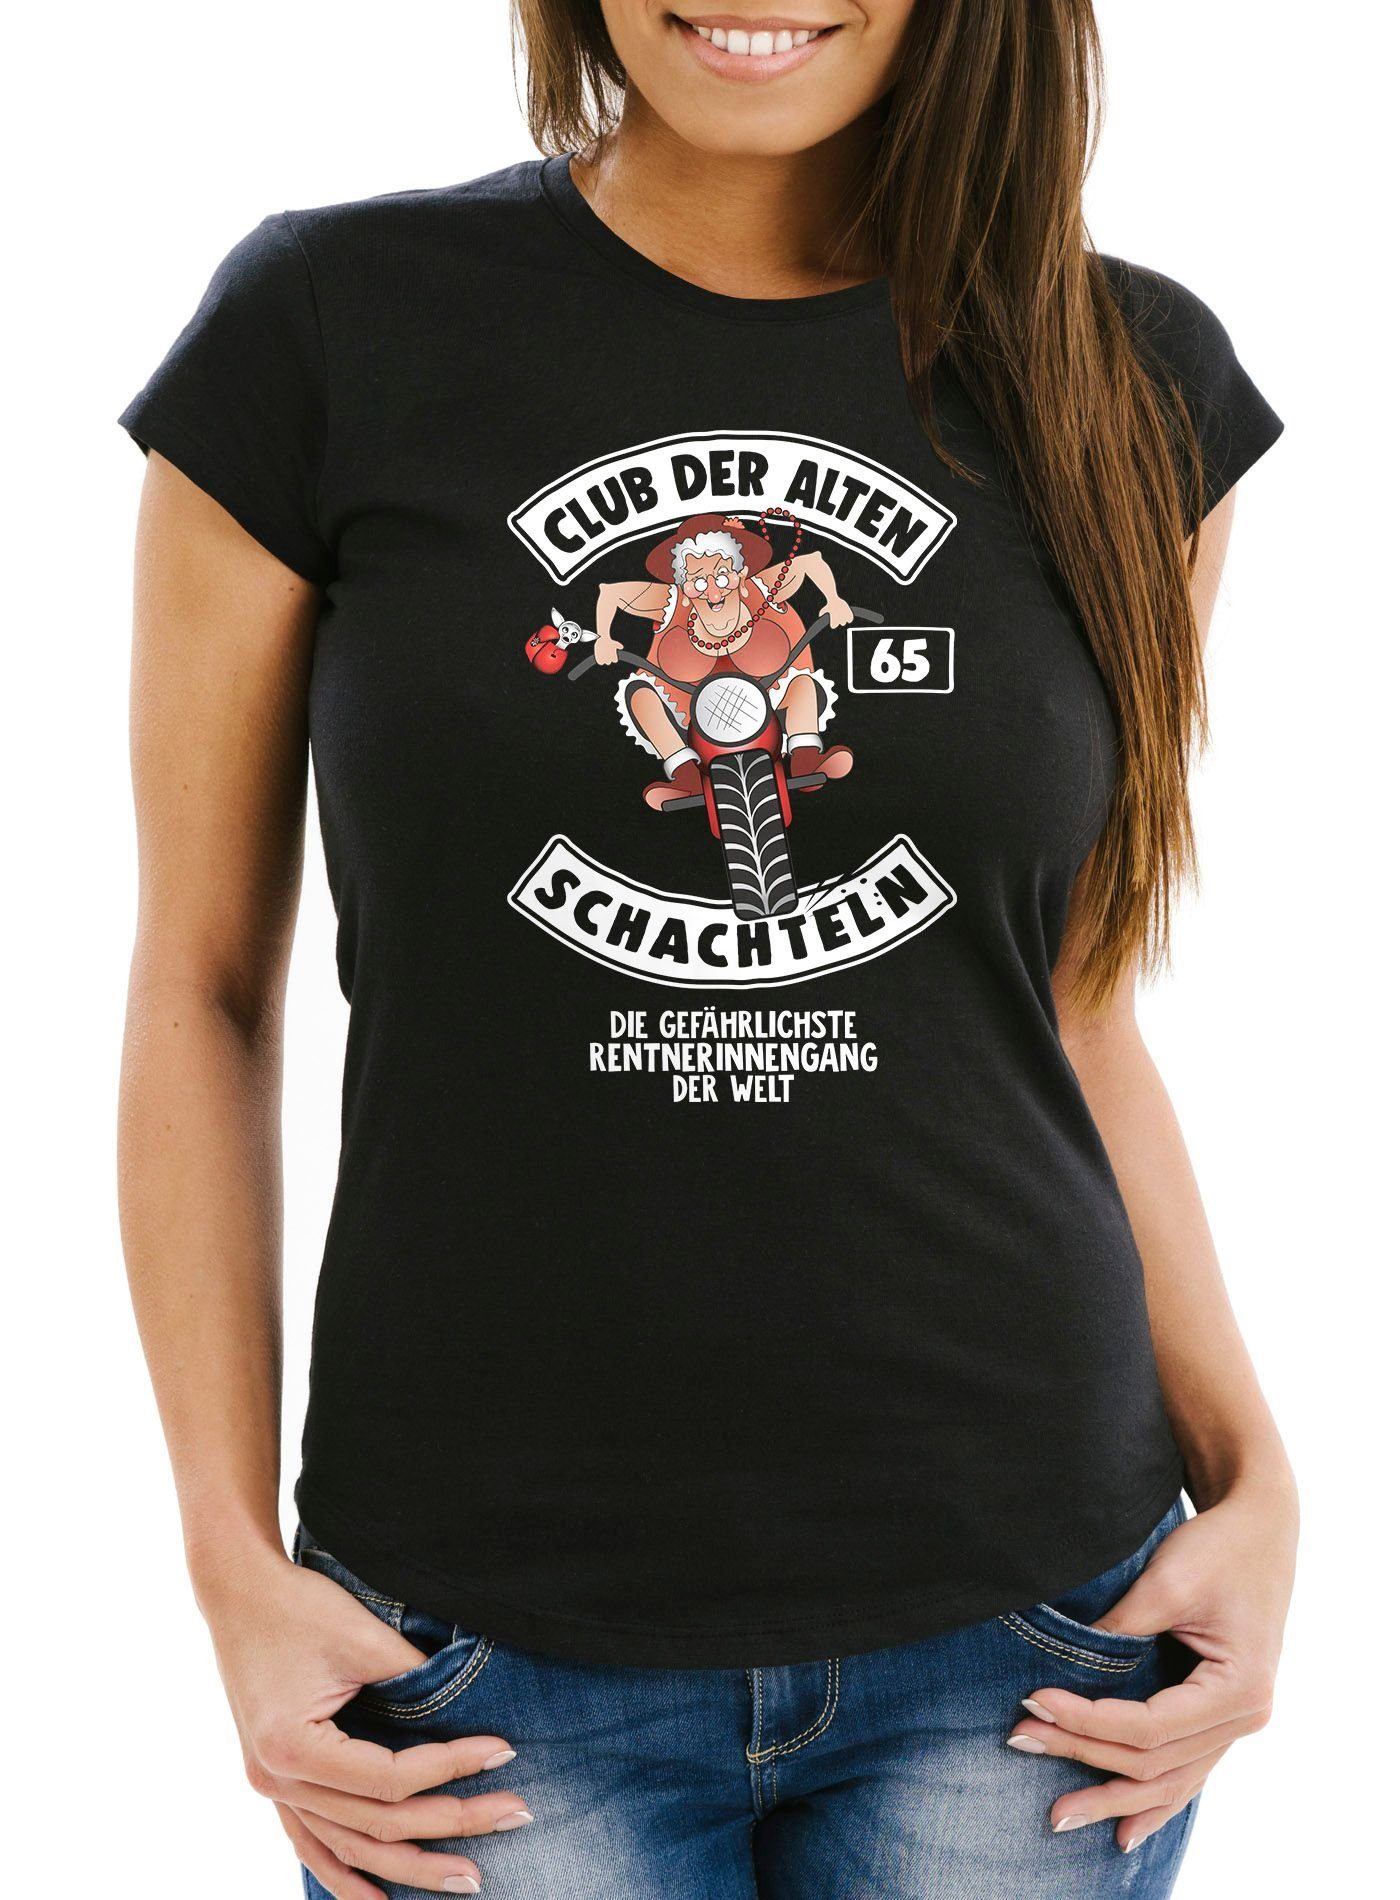 65 Print schwarz Fun-Shirt für alten Print-Shirt mit Frauen Runder Moonworks® Schachteln Der Geburtstags-T-Shirt MoonWorks Geschenk Damen ältere Club Geburtstag